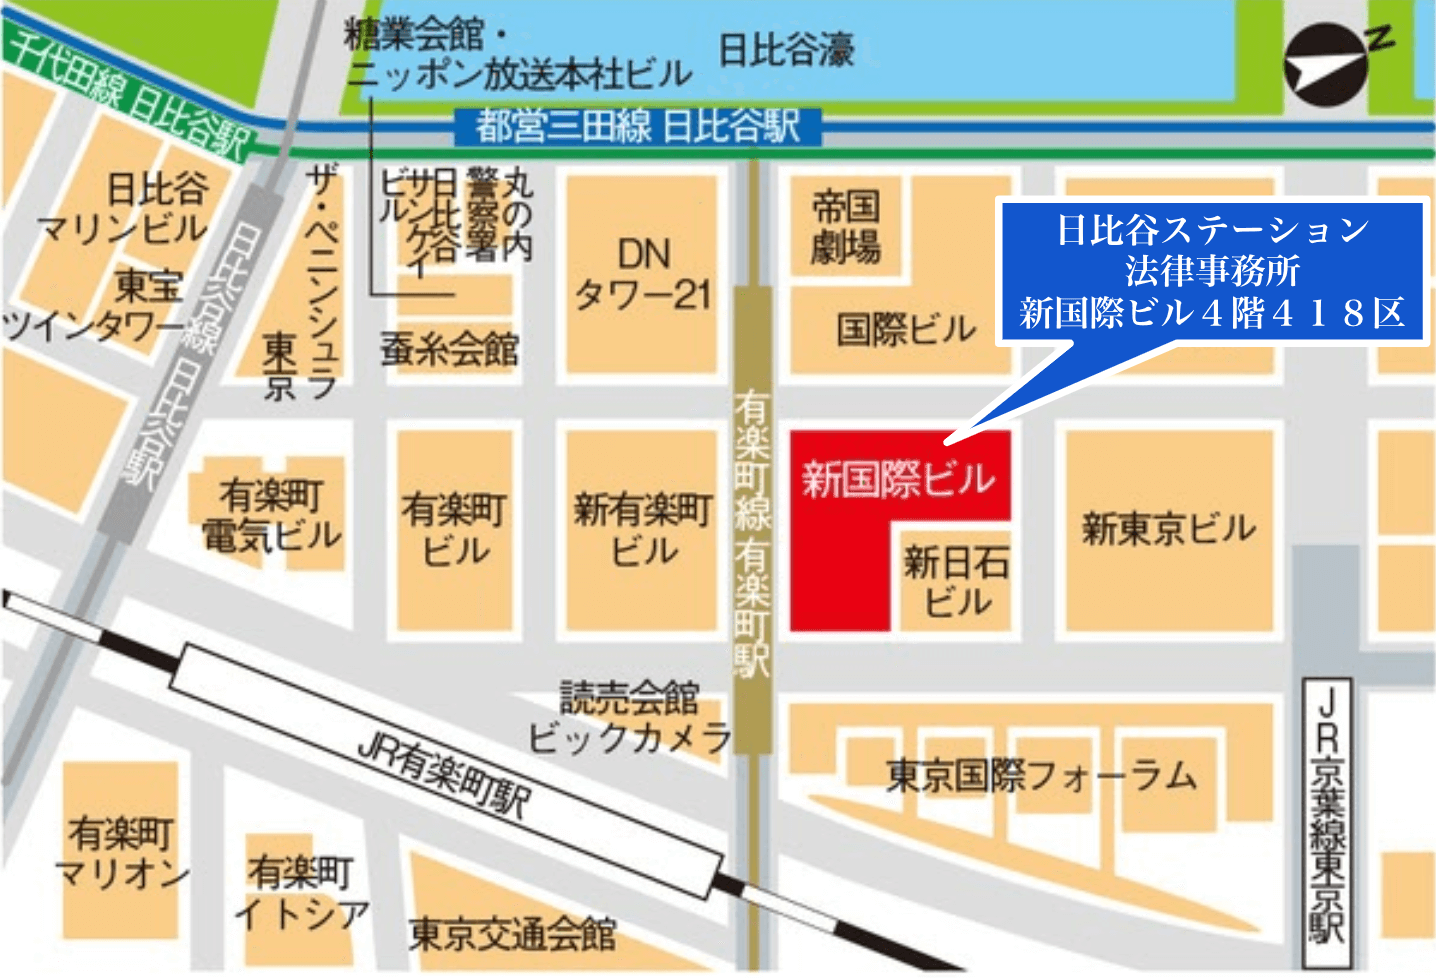 東京で残業代請求をお考えの方は日比谷ステーション法律事務所にご相談下さい